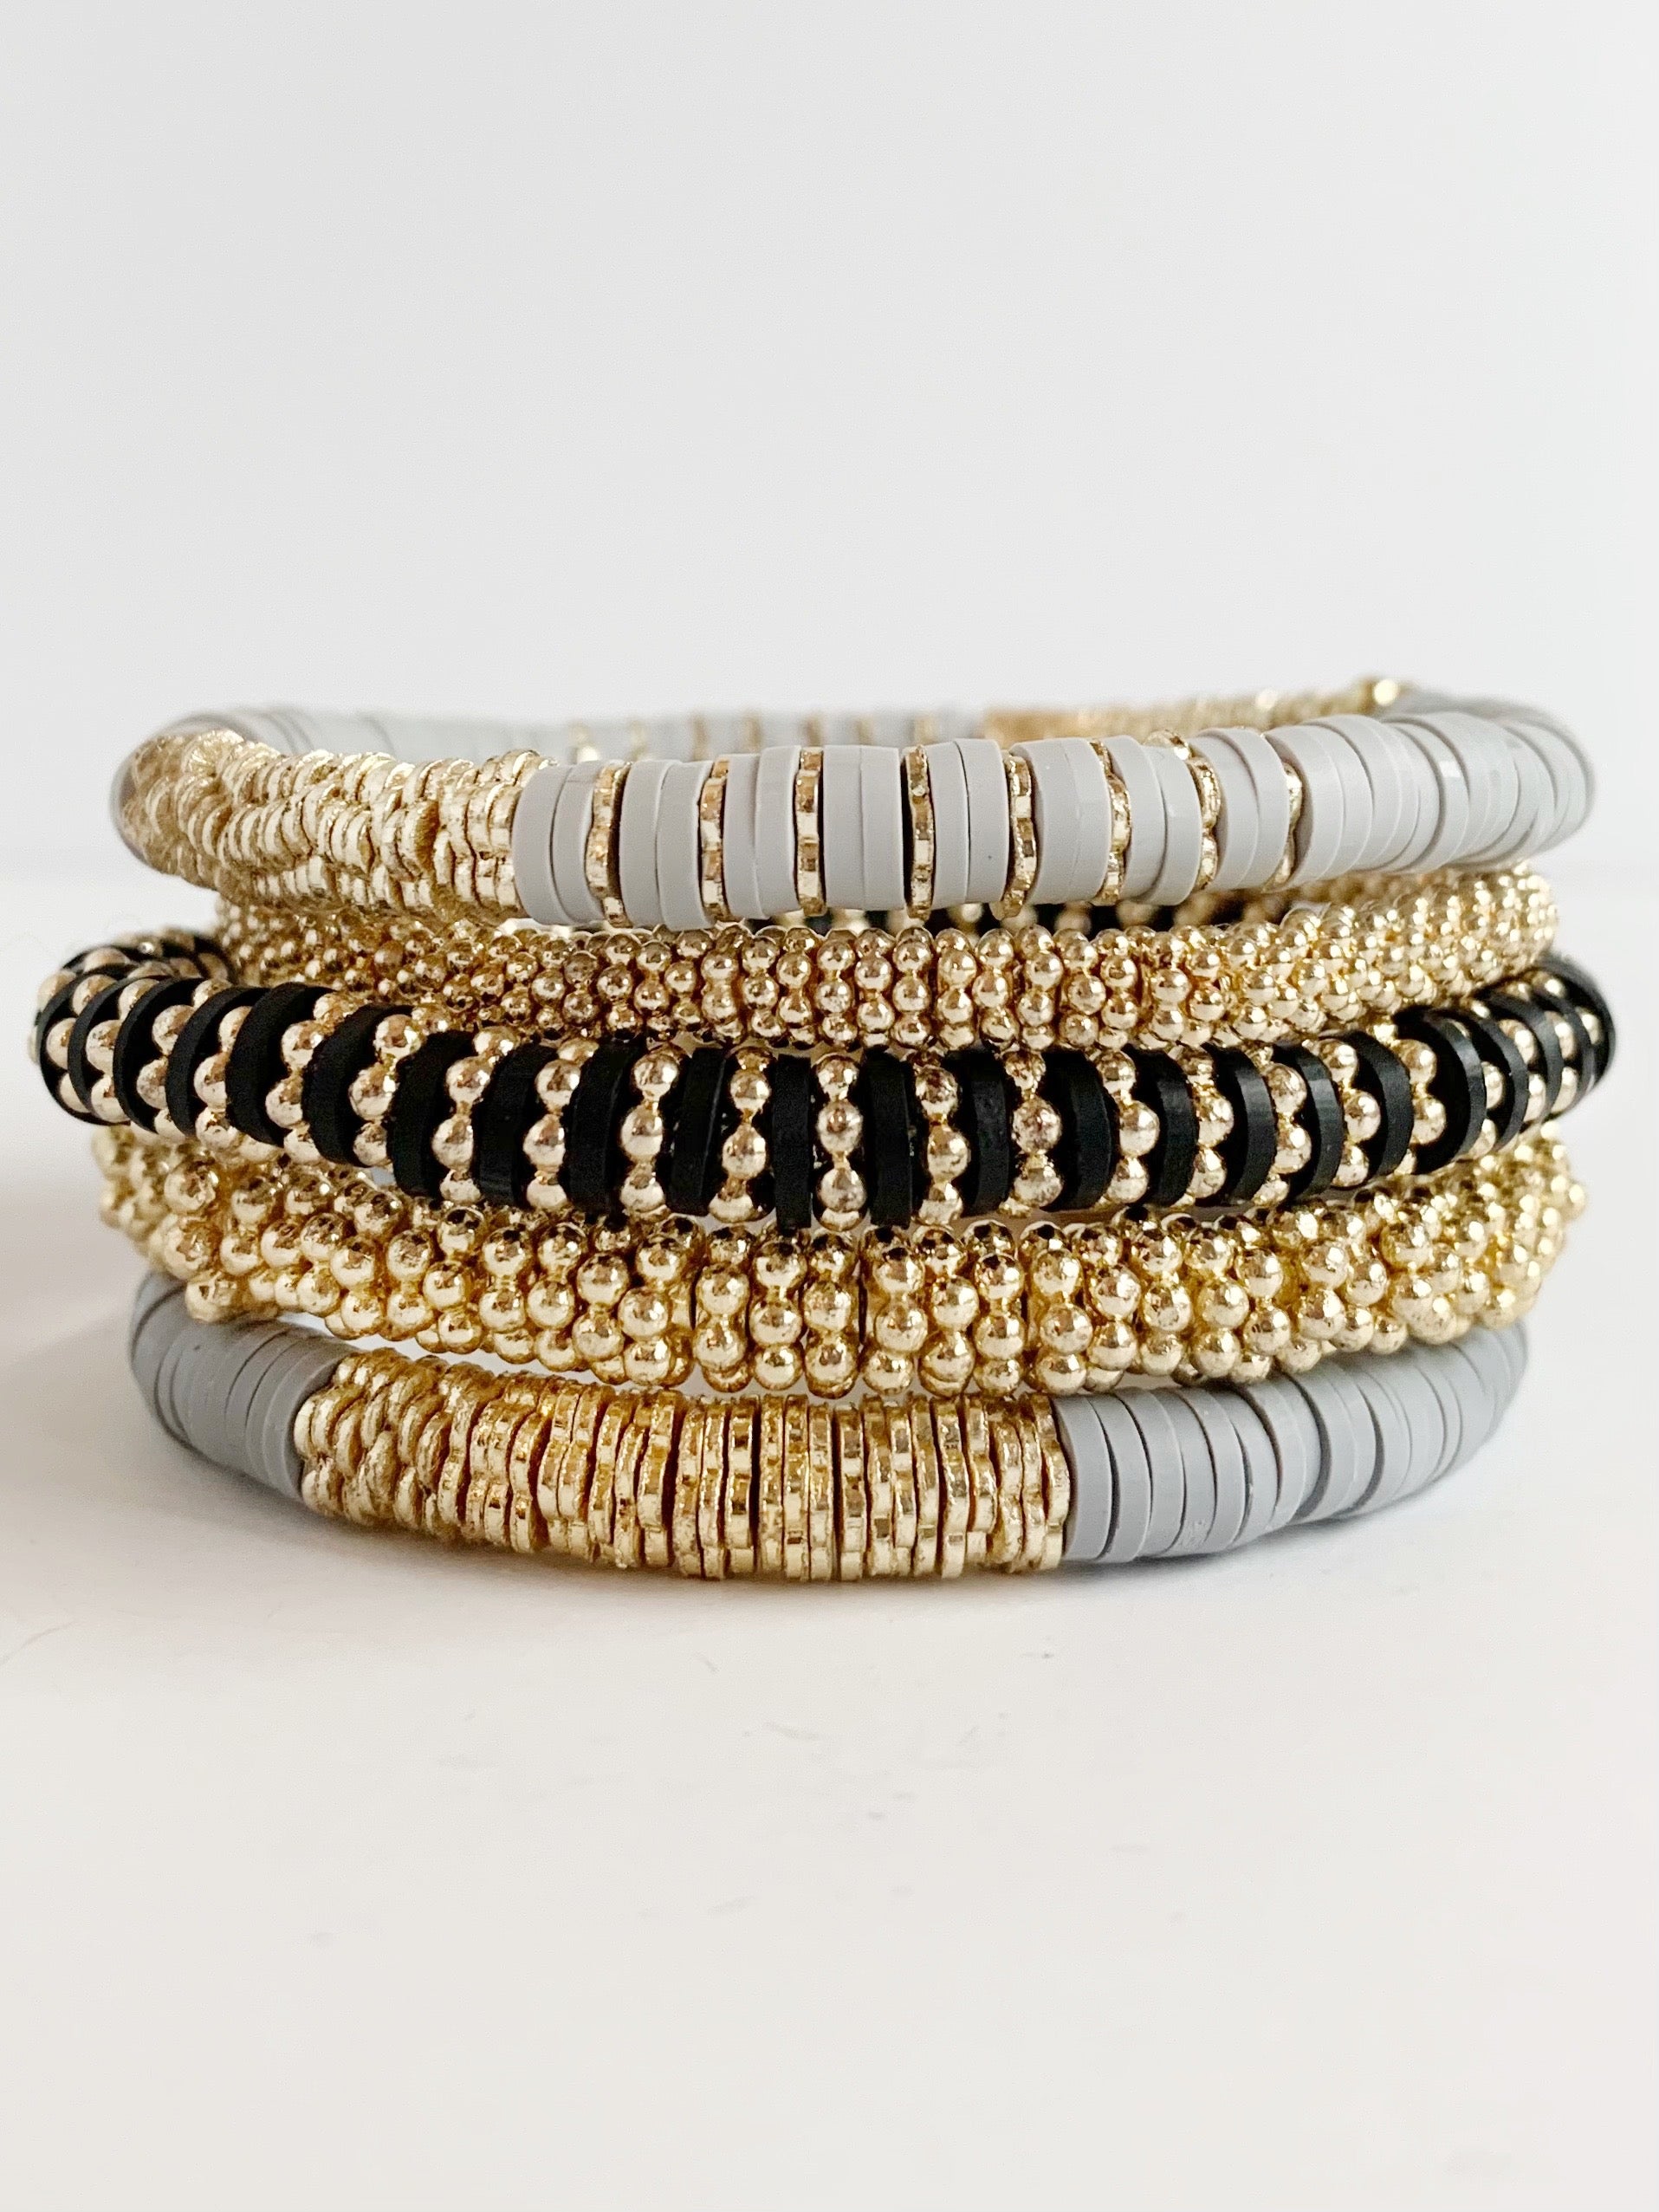 Bundle of stretch bracelets stacked together - they are -light gray confetti bracelet -small gold confetti bracelet -medium gold confetti bracelet -dark gray confetti bracelet -black and gold (the rosella) confetti bracelet